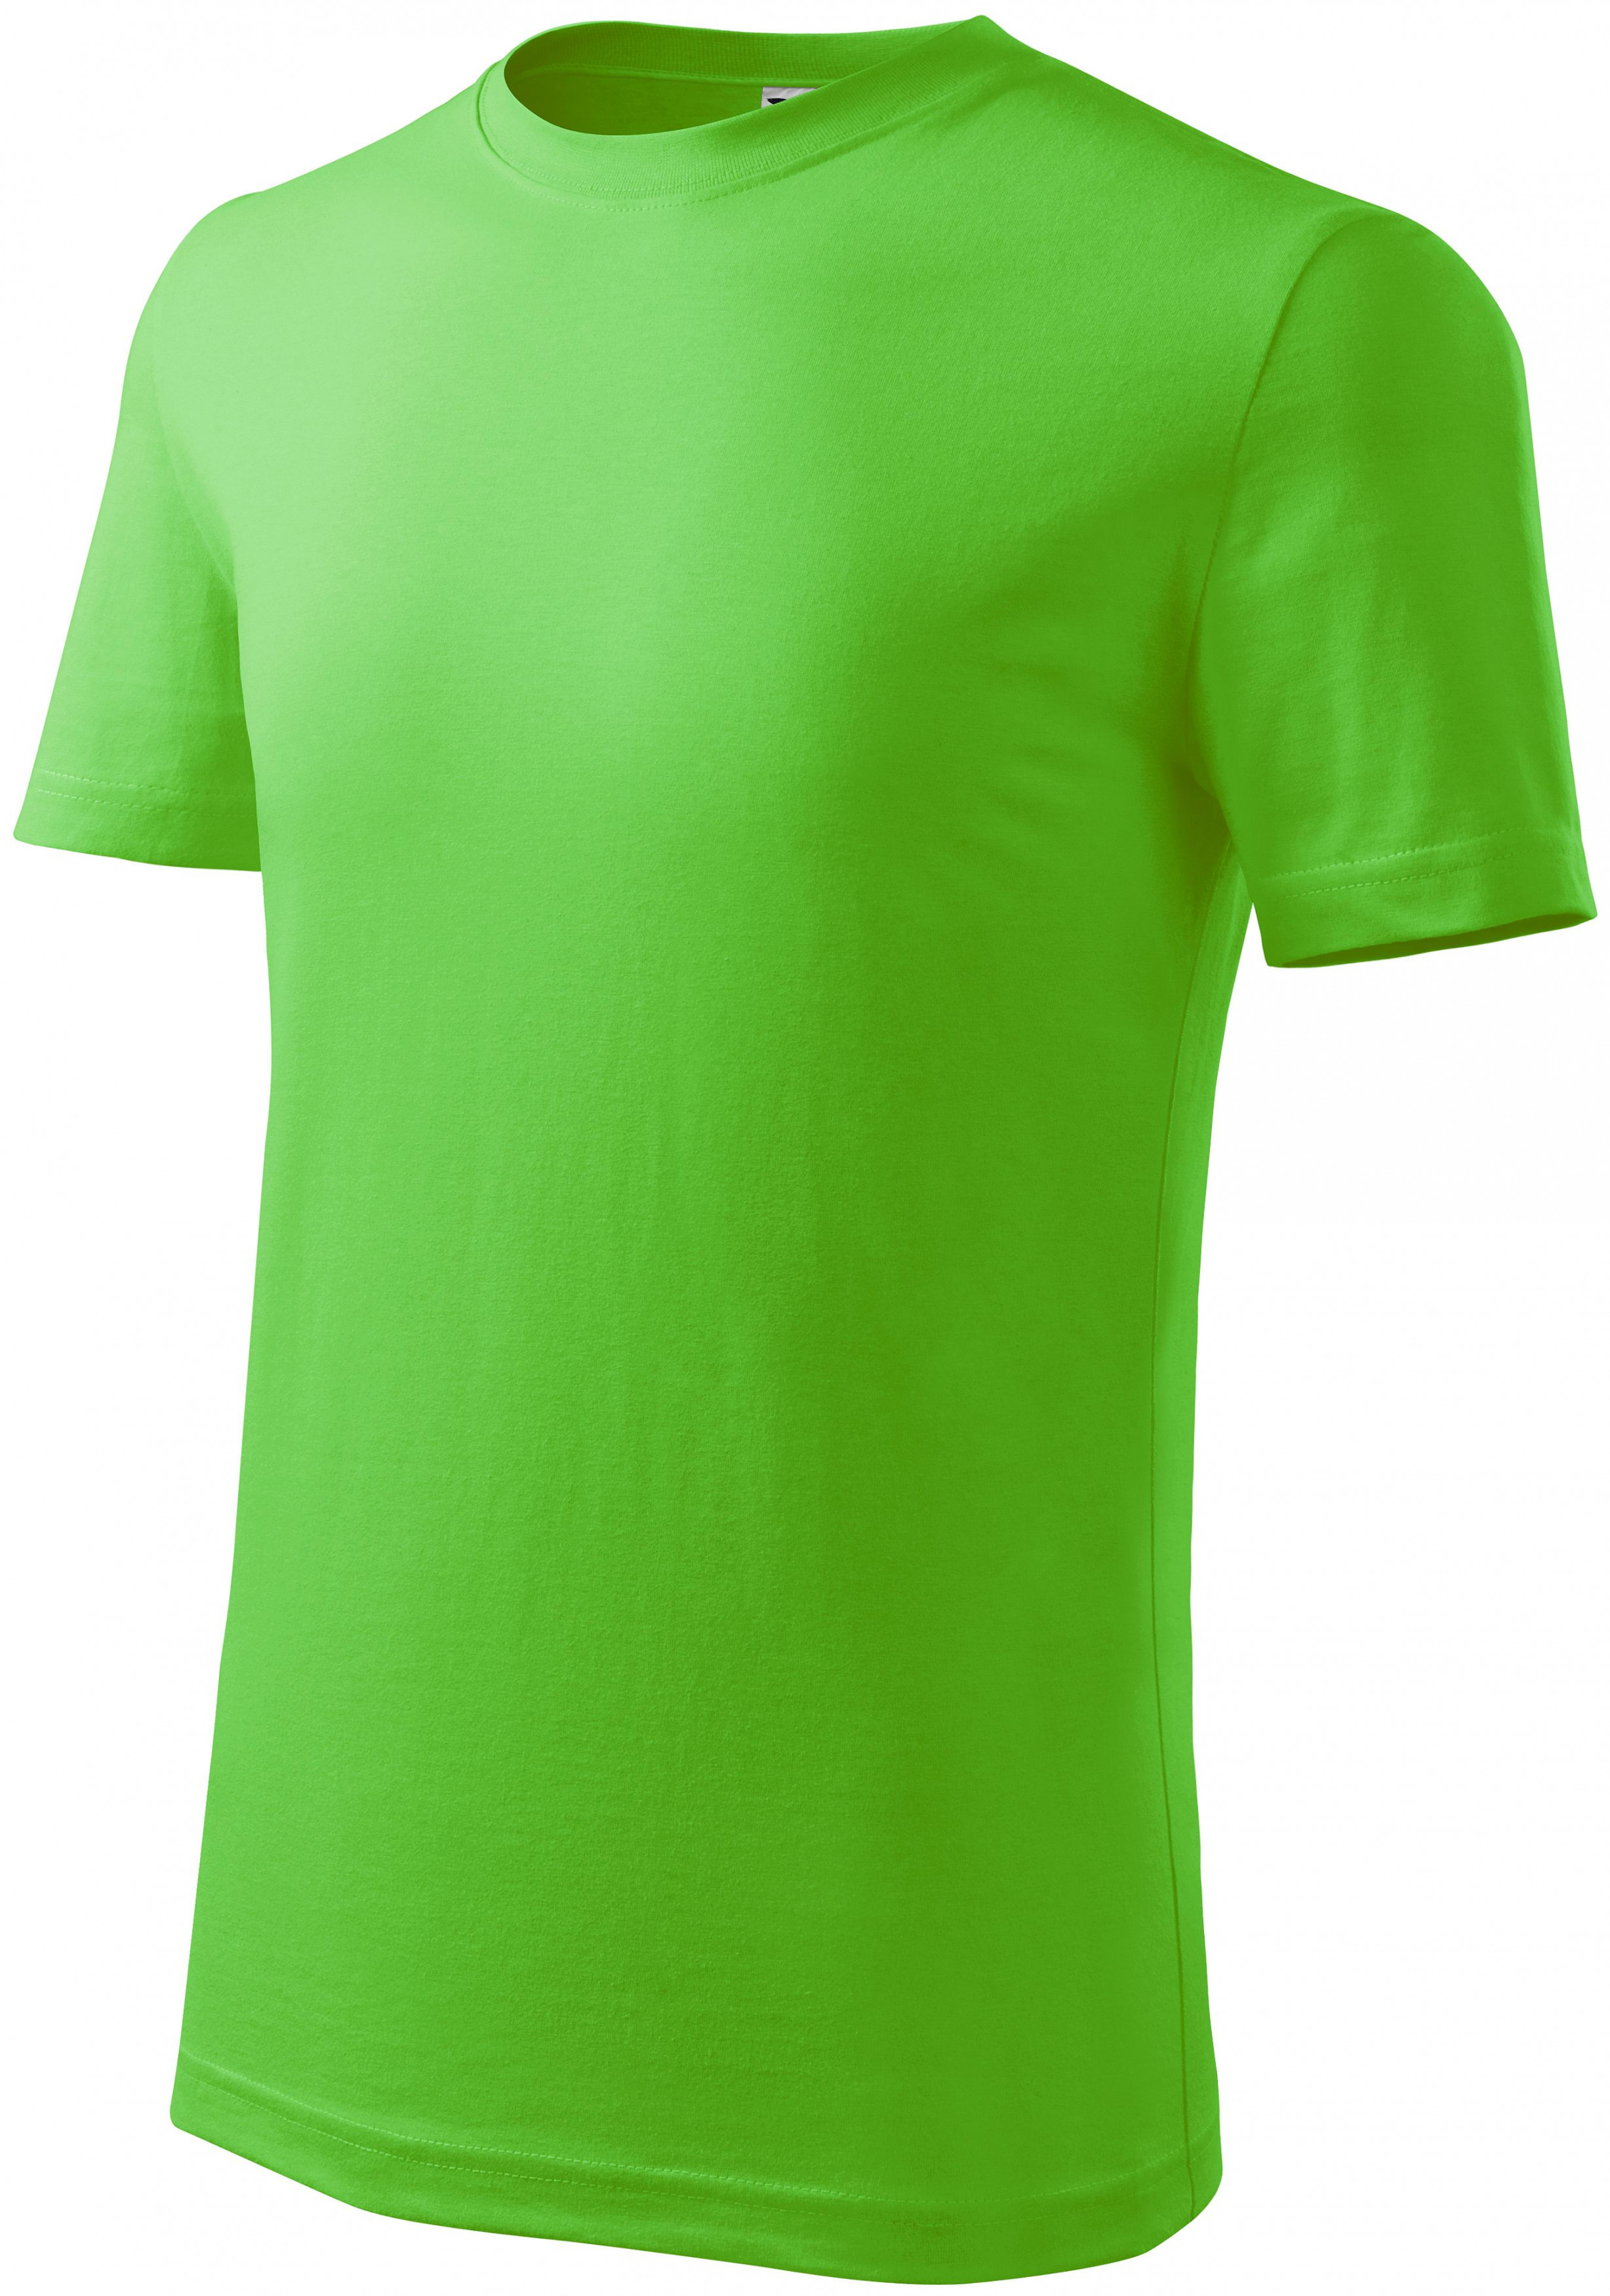 Detské tričko ľahšie, jablkovo zelená, 158cm / 12rokov